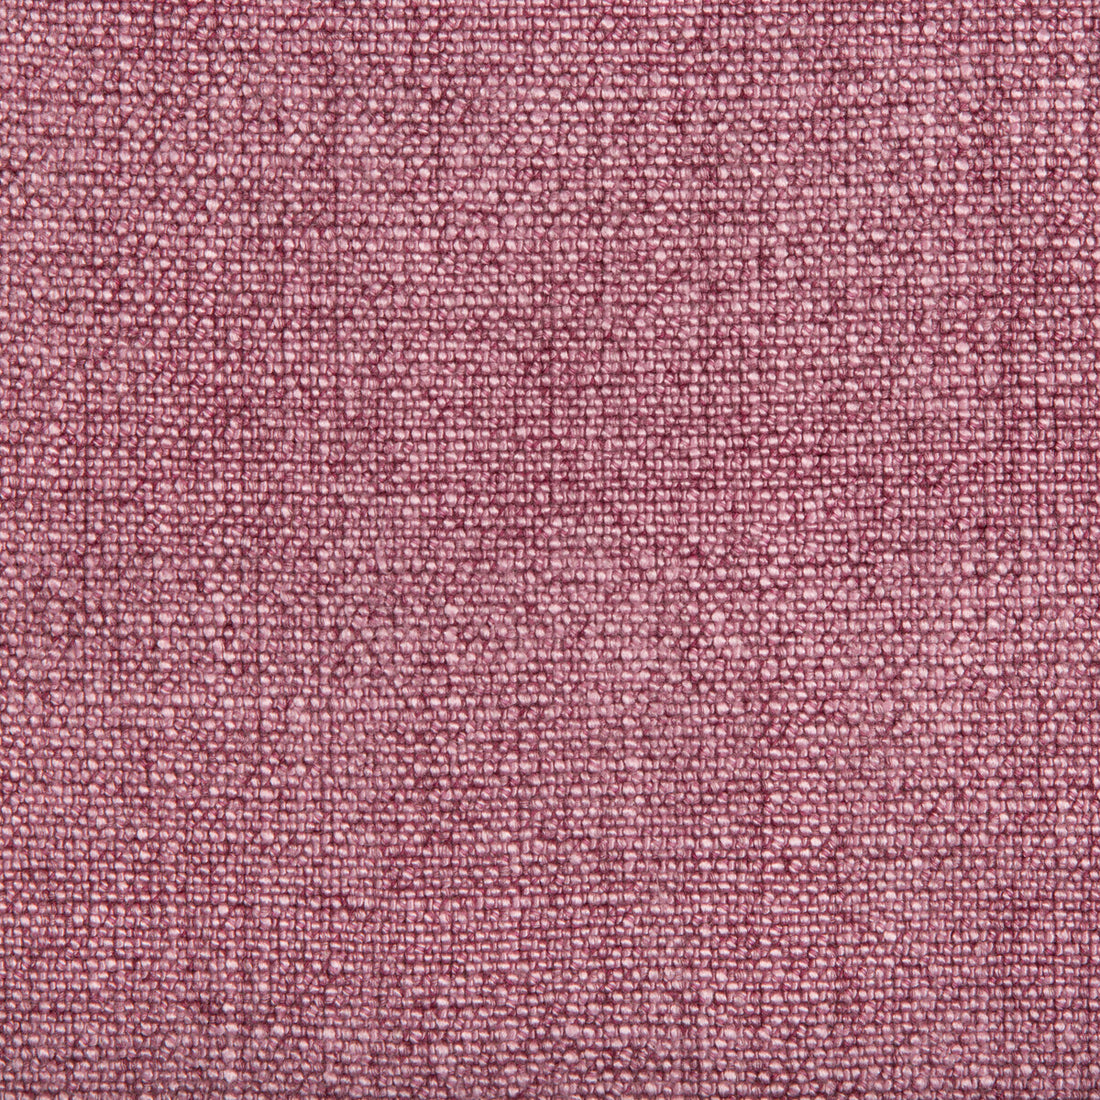 Kravet Basics fabric in 35189-110 color - pattern 35189.110.0 - by Kravet Basics